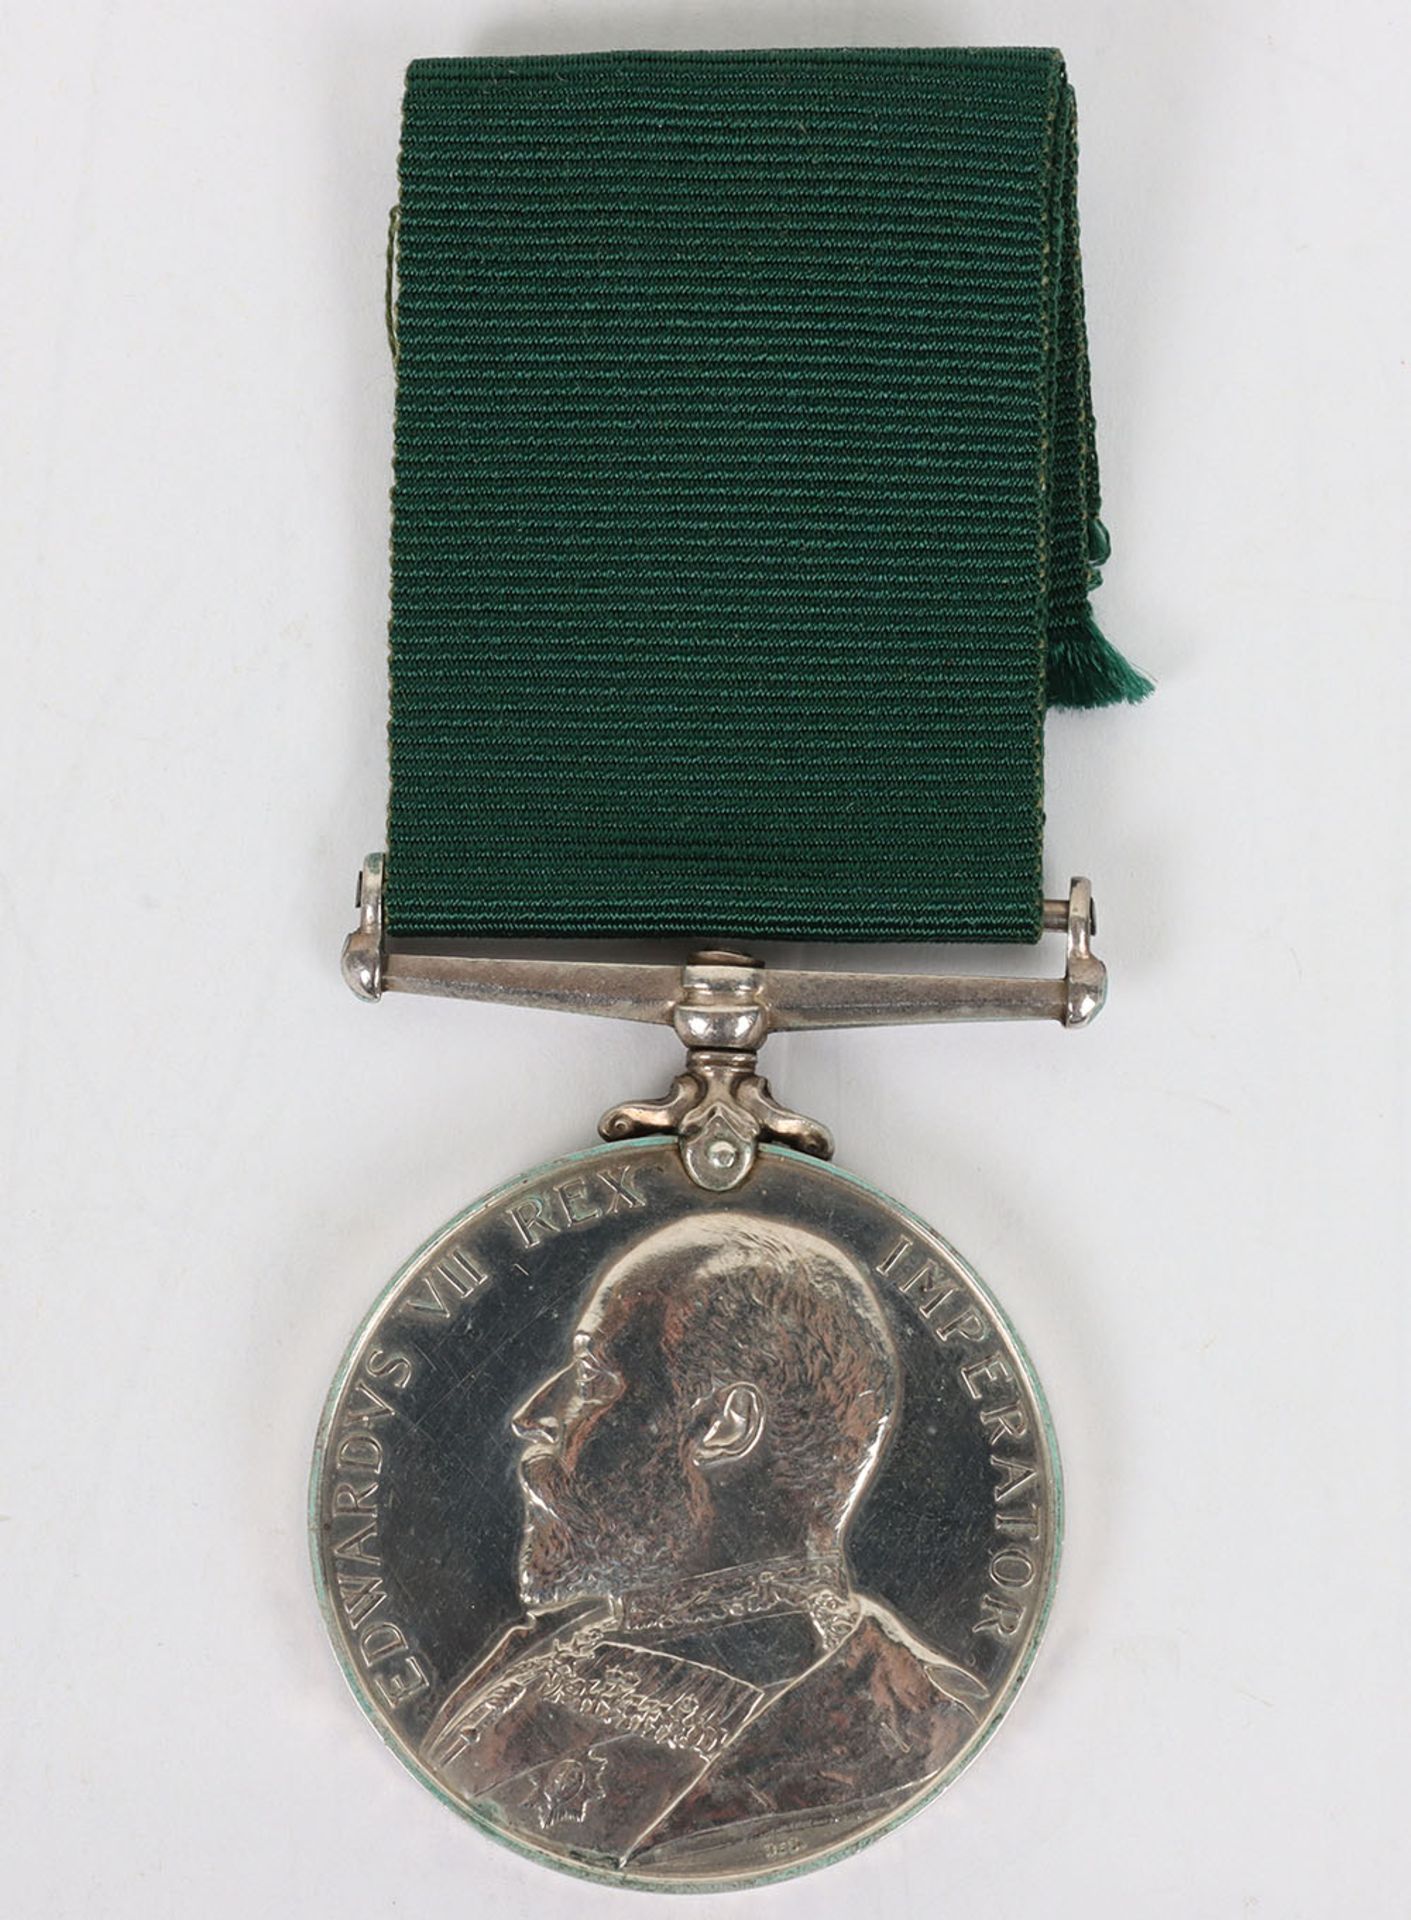 Edwardian Volunteer Long Service Medal to the 1st Volunteer Battalion Northamptonshire Regiment